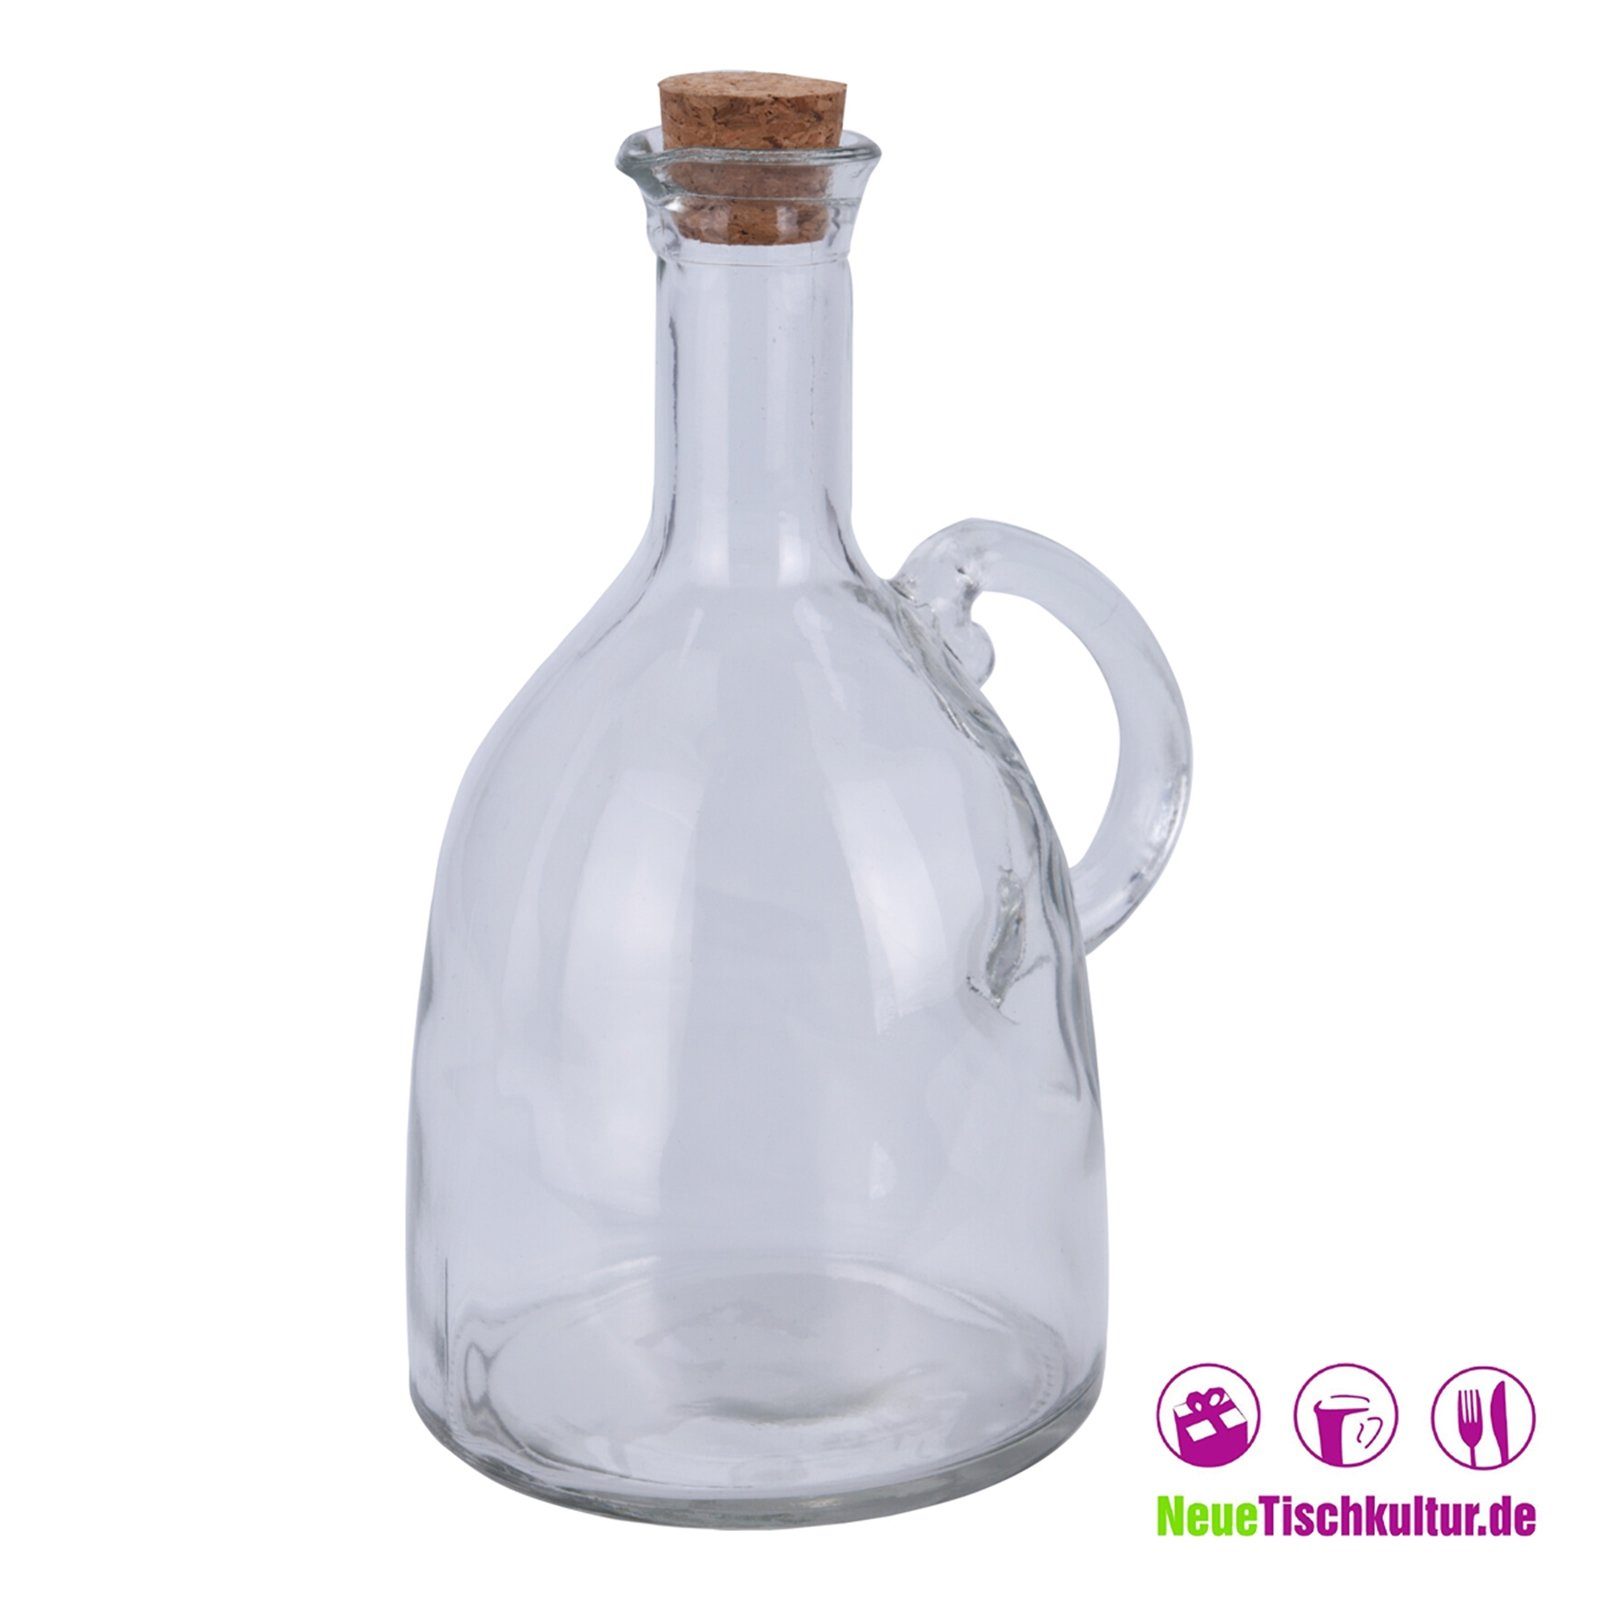 Vorratsglas Öl für Neuetischkultur Glas Glasflasche oder mit Essig, bauchig Korken